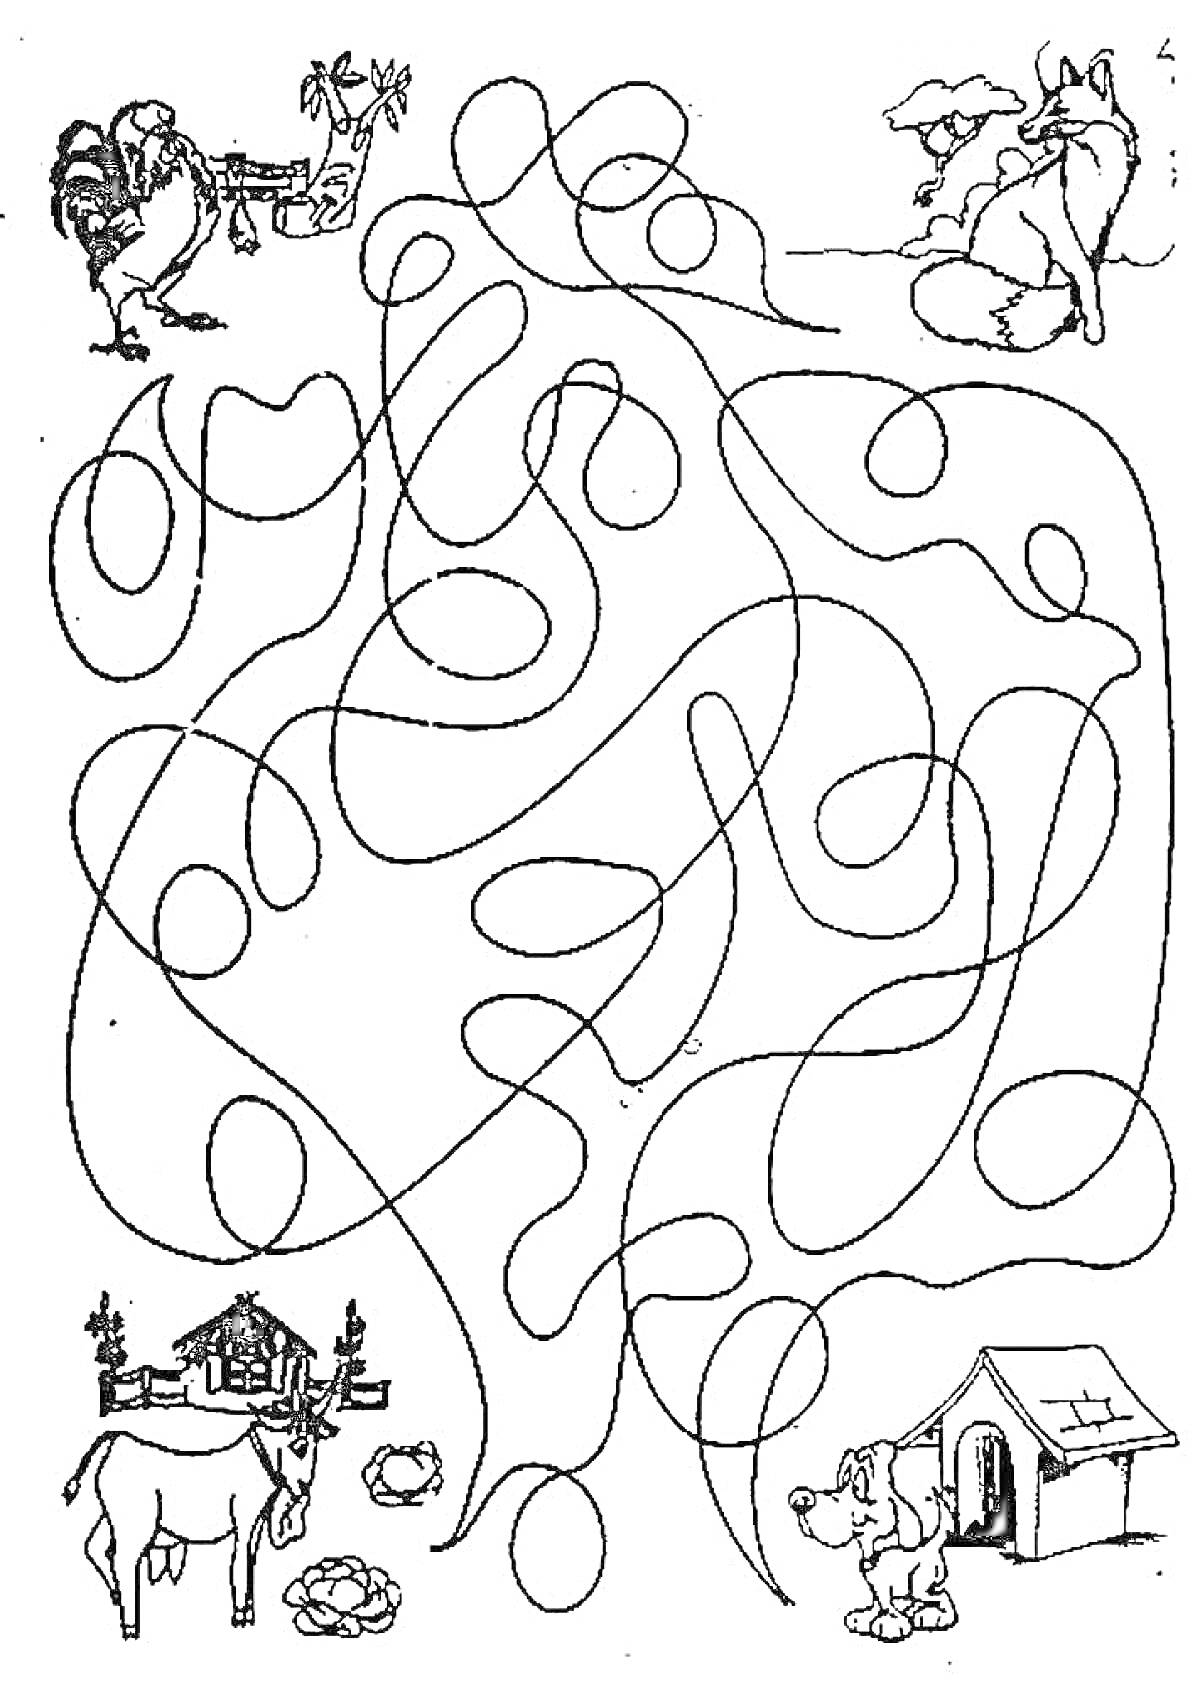 Раскраска Фермер с петухом, лиса, домик, корова с телёнком, собака с конурой и запутанные линии